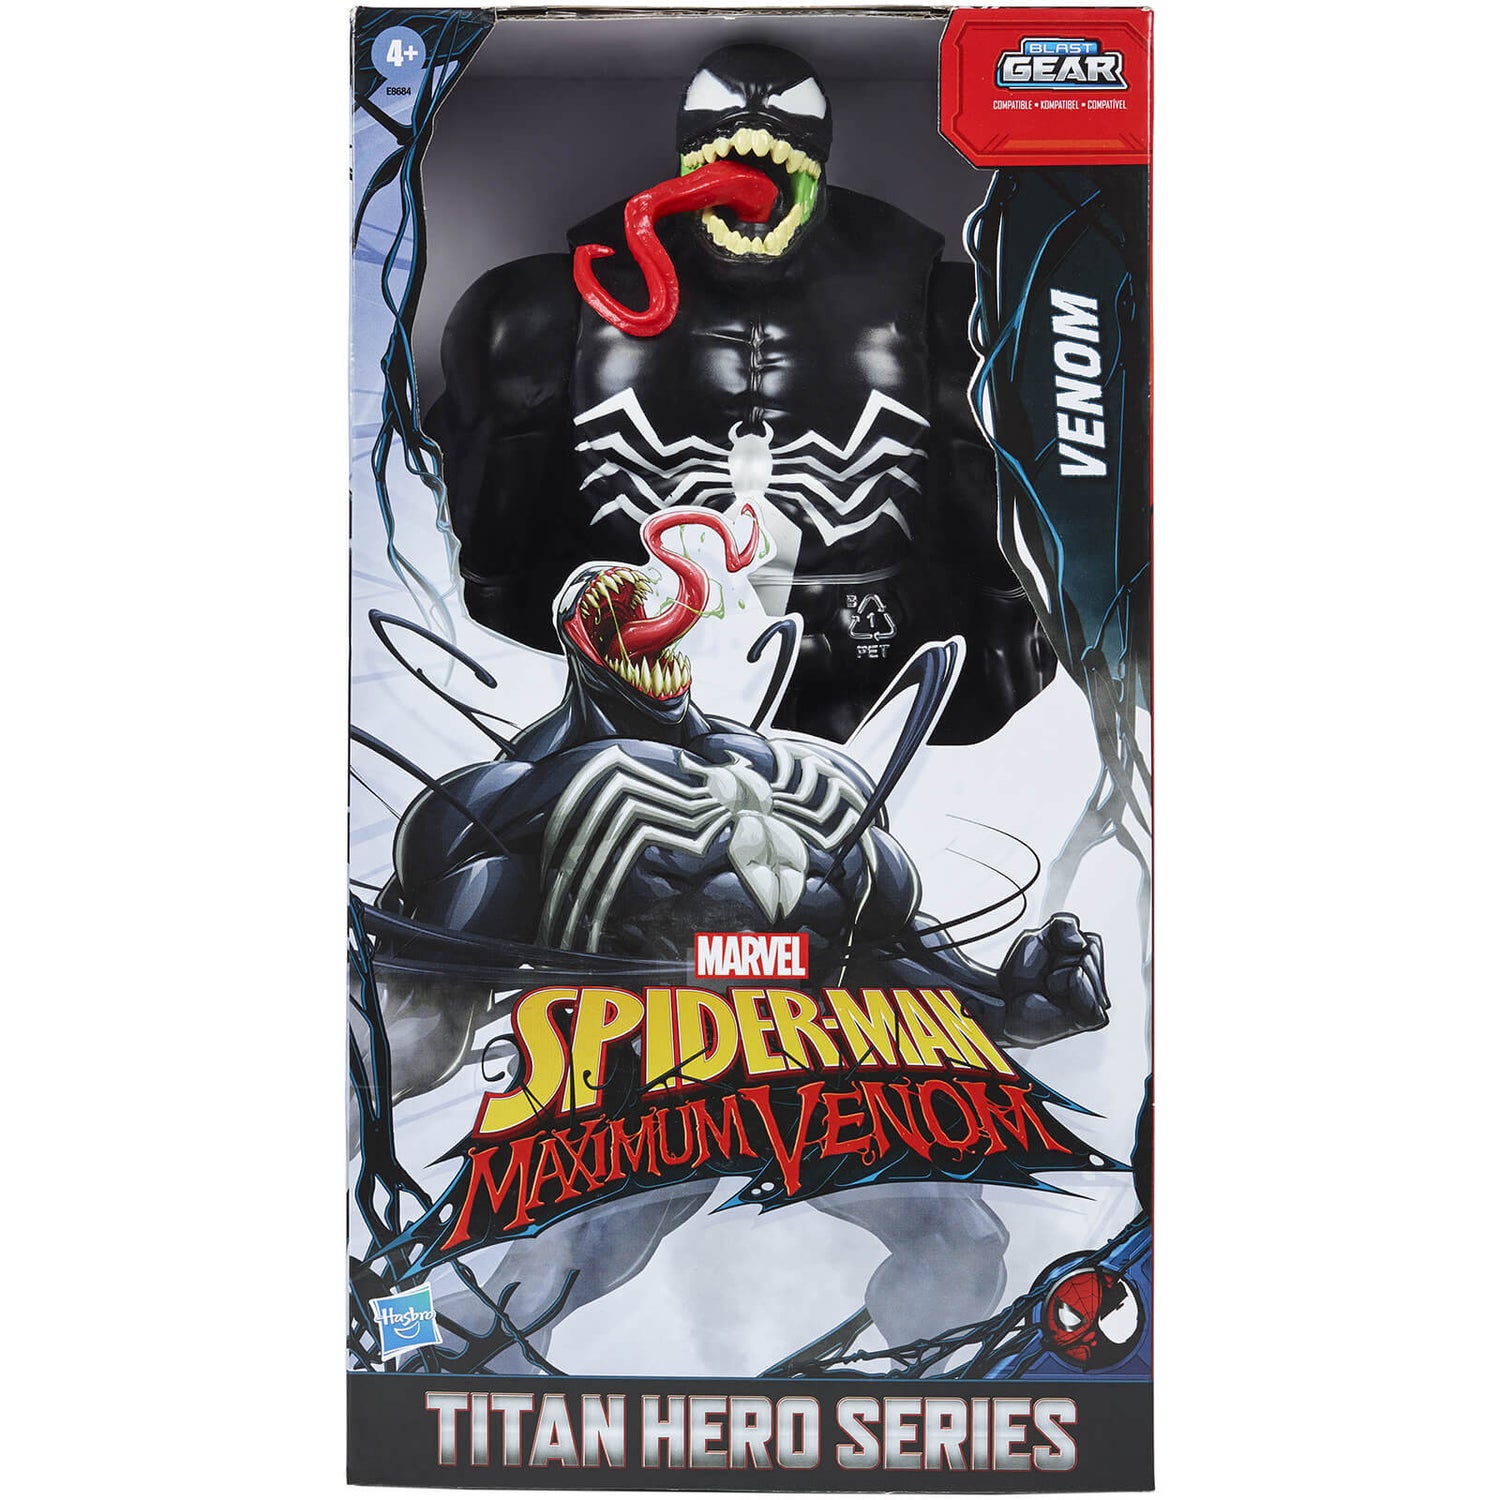 Hasbro Marvel Titan Hero - Spiderman Maximum Venom Action Figure